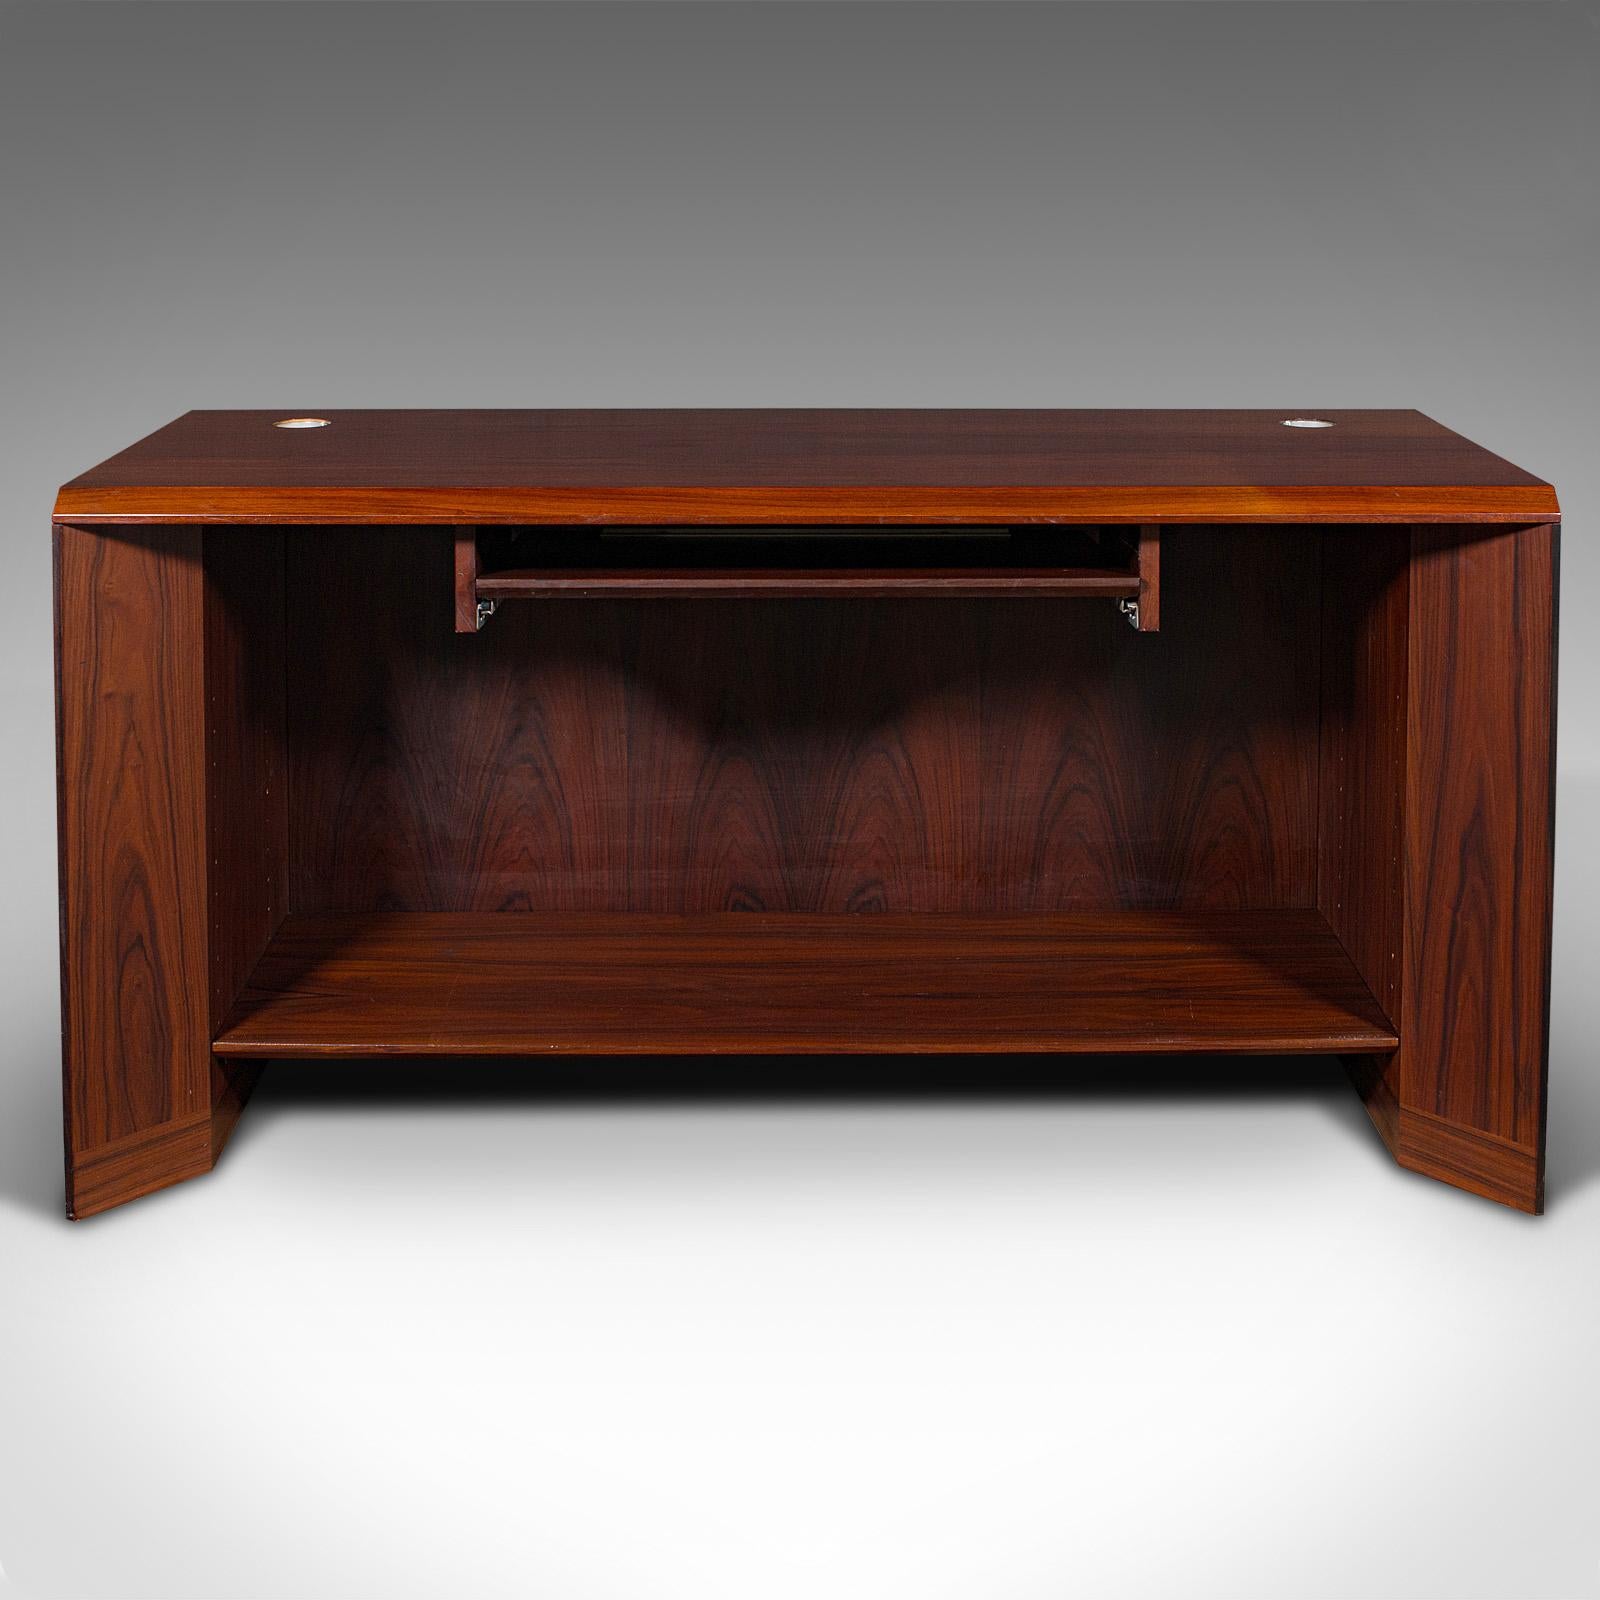 Il s'agit d'un bureau de secrétaire vintage. Table de bureau étroite danoise en bois de rose par Sibast Mobel, datant de la fin du 20e siècle, vers 1970.

Sibast Mobel a été fondé par Helge Sibast (1908 - 1985), un artisan danois soucieux de mêler